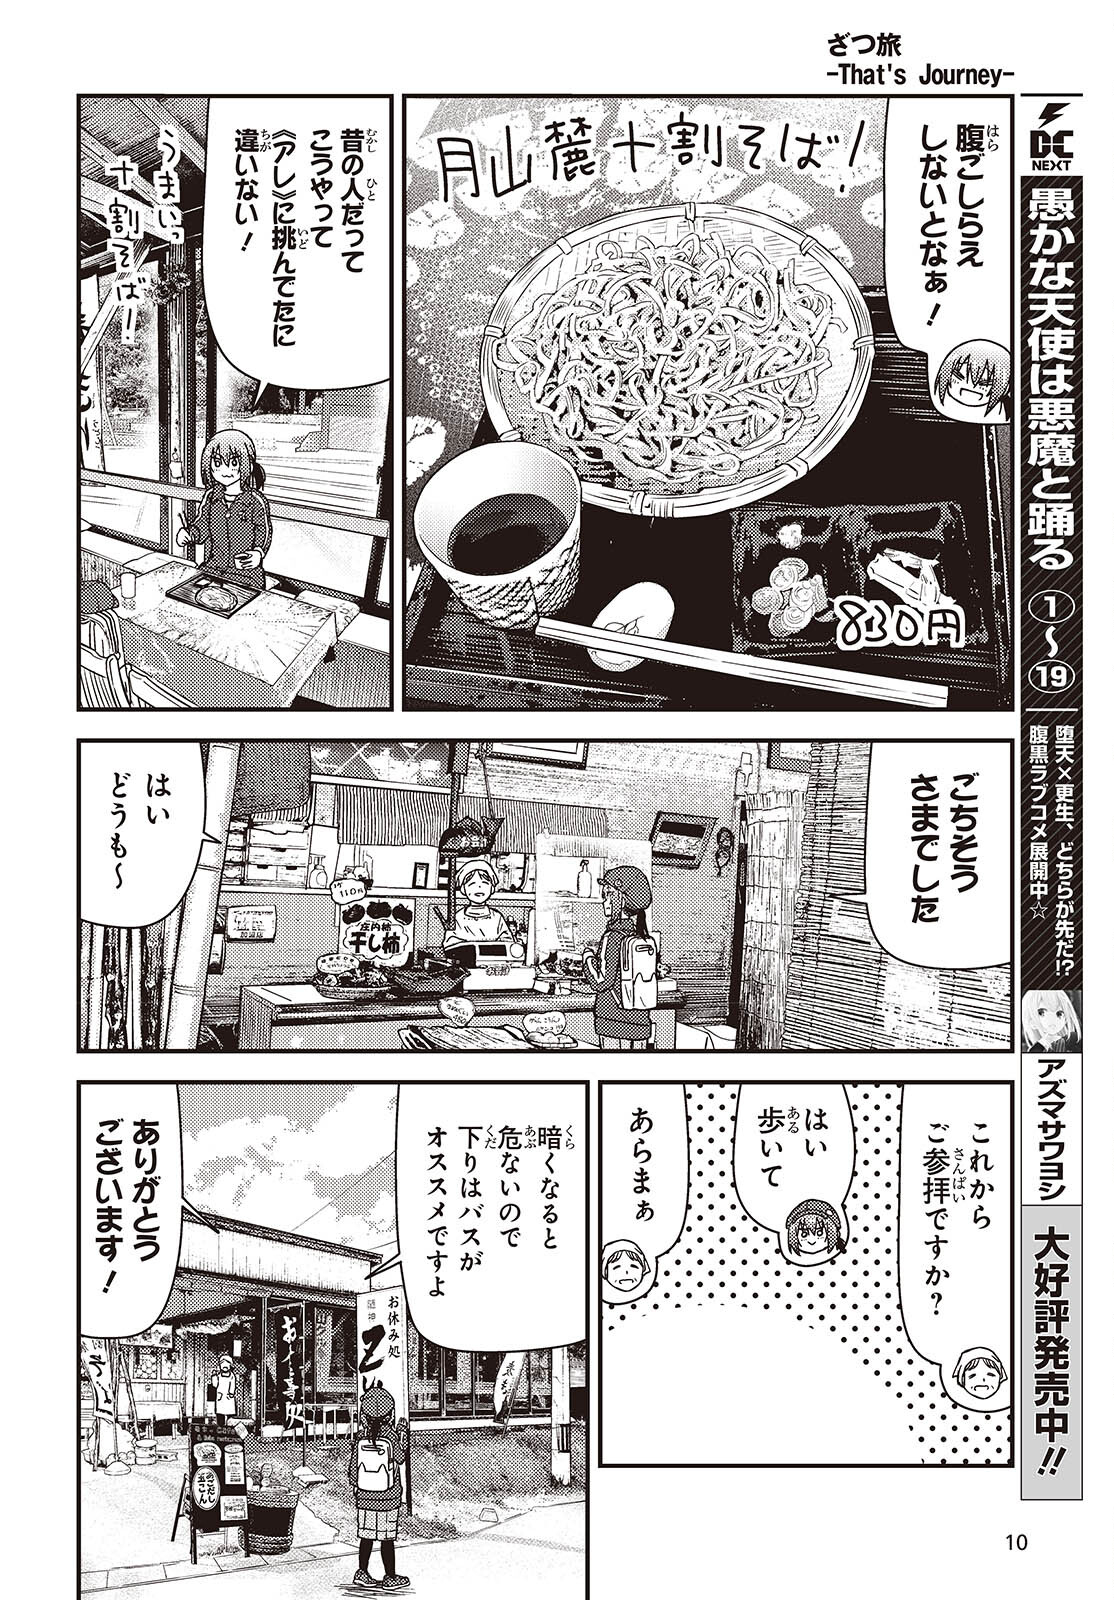 ざつ旅-That's Journey- 第38話 - Page 8